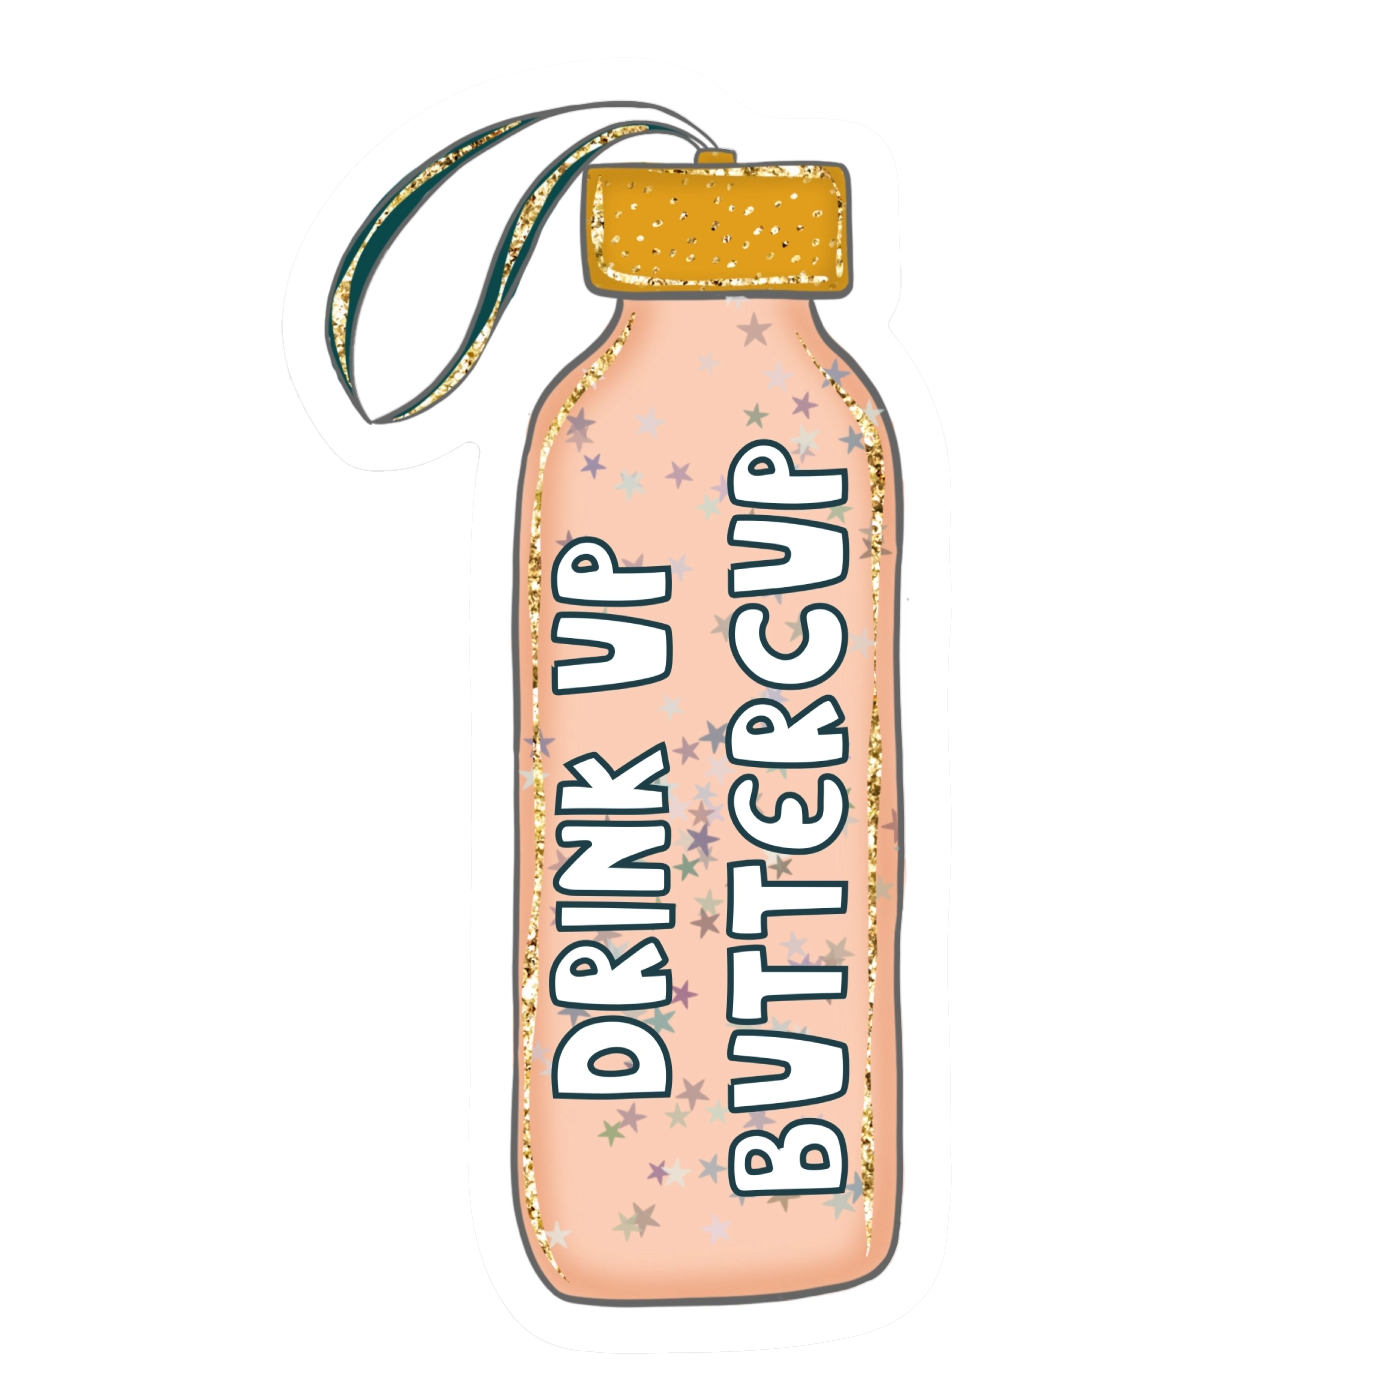 Drink Up Buttercup Sticker – Songbird Boutique